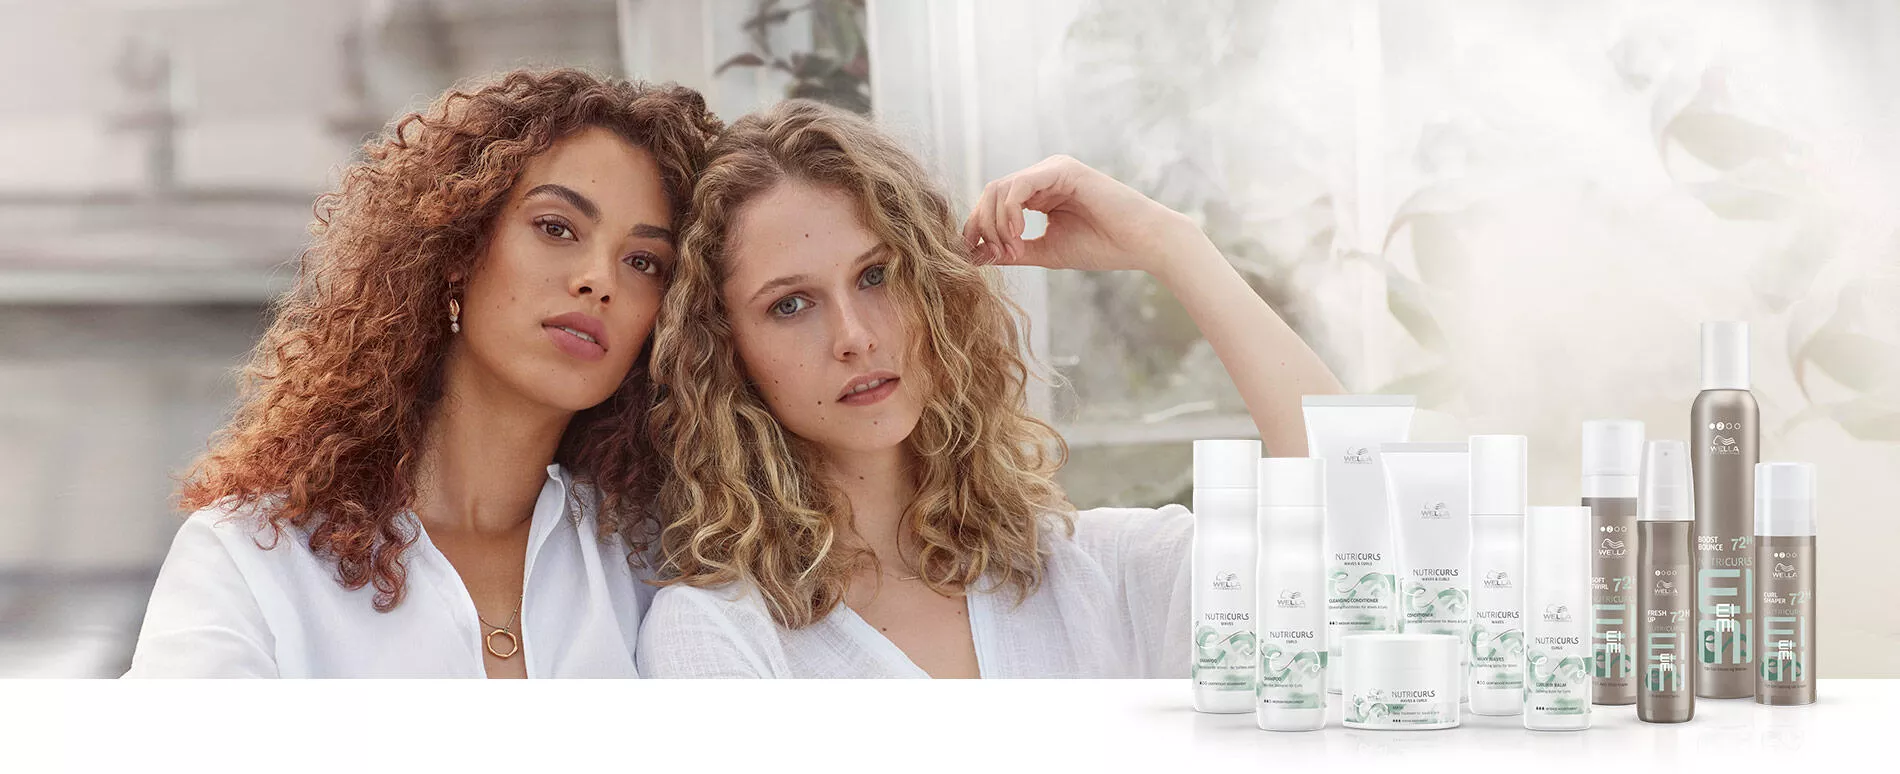 Twee vrouwen met pijpenkrullen op schouderlengte in witte kleding, bij elkaar zittend, met NUTRICURLS-producten